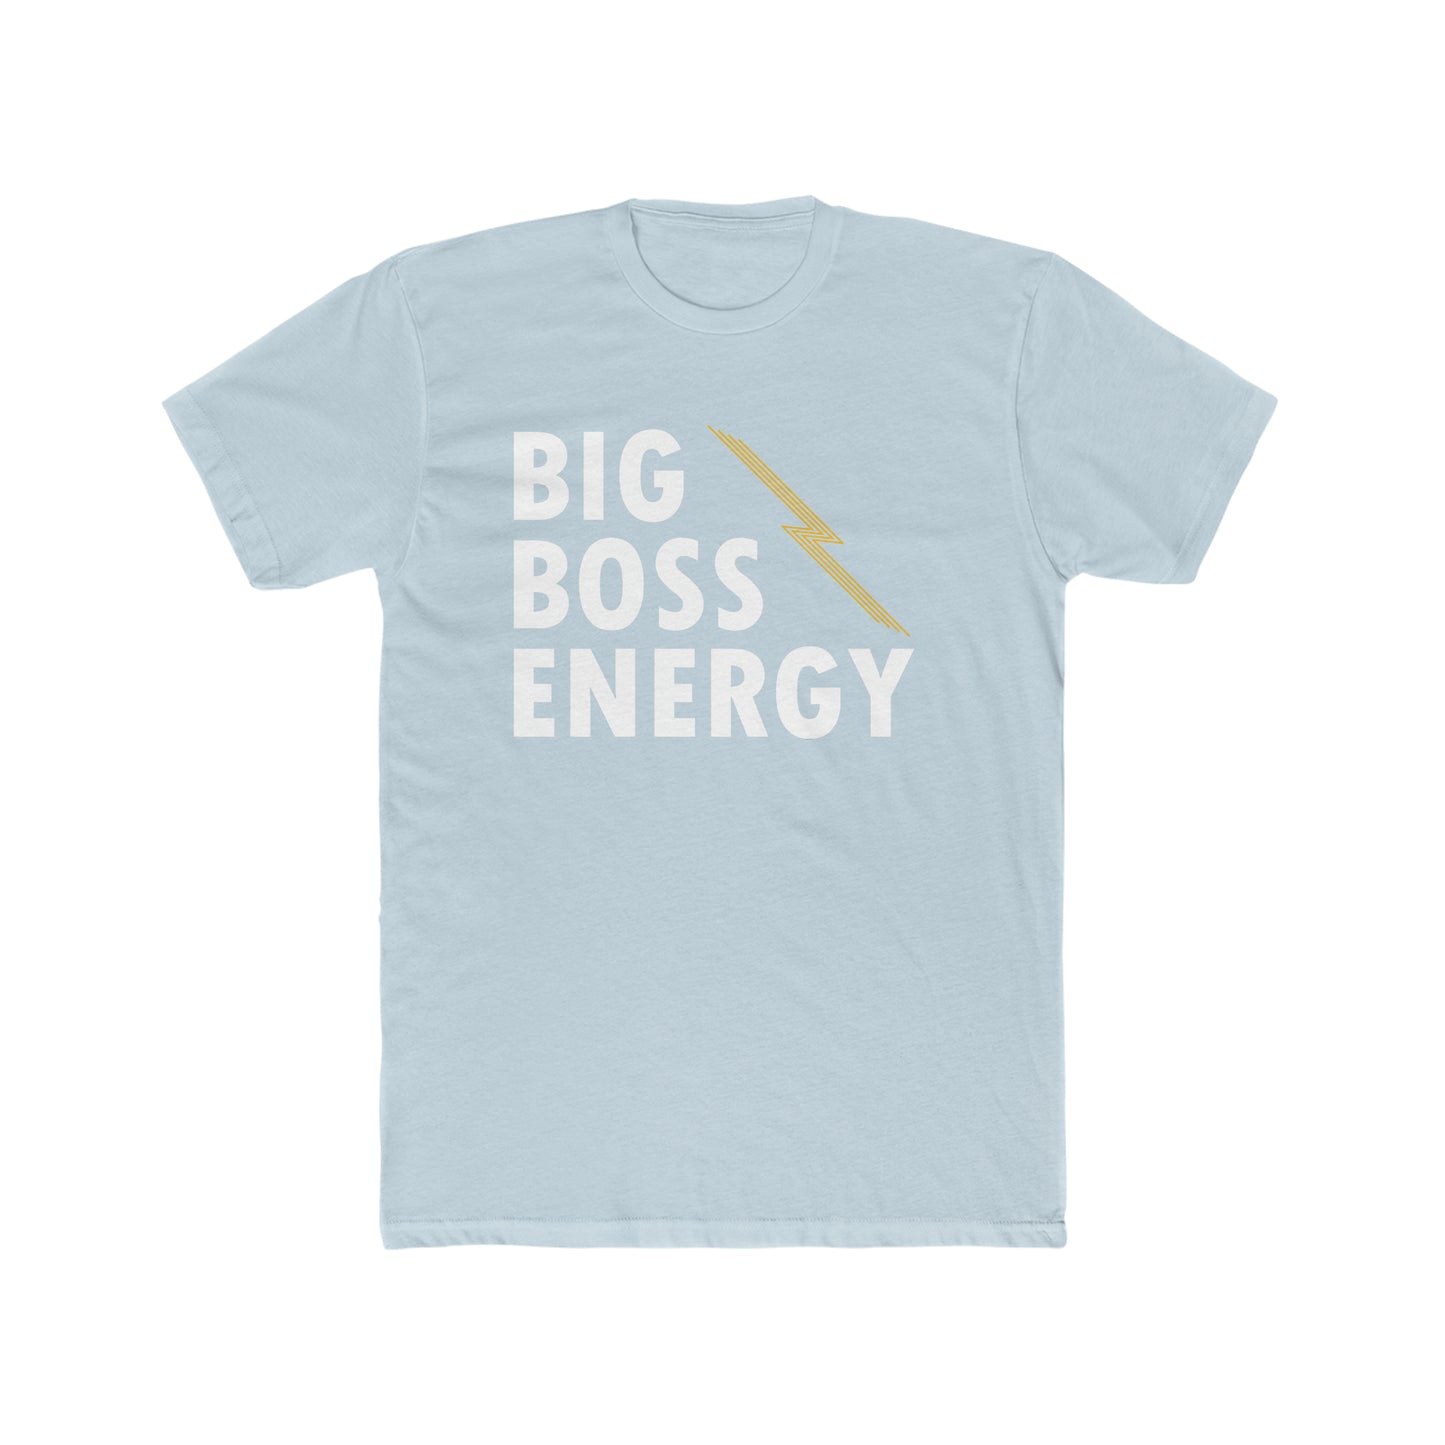 "Big Boss Energy" unisex tee